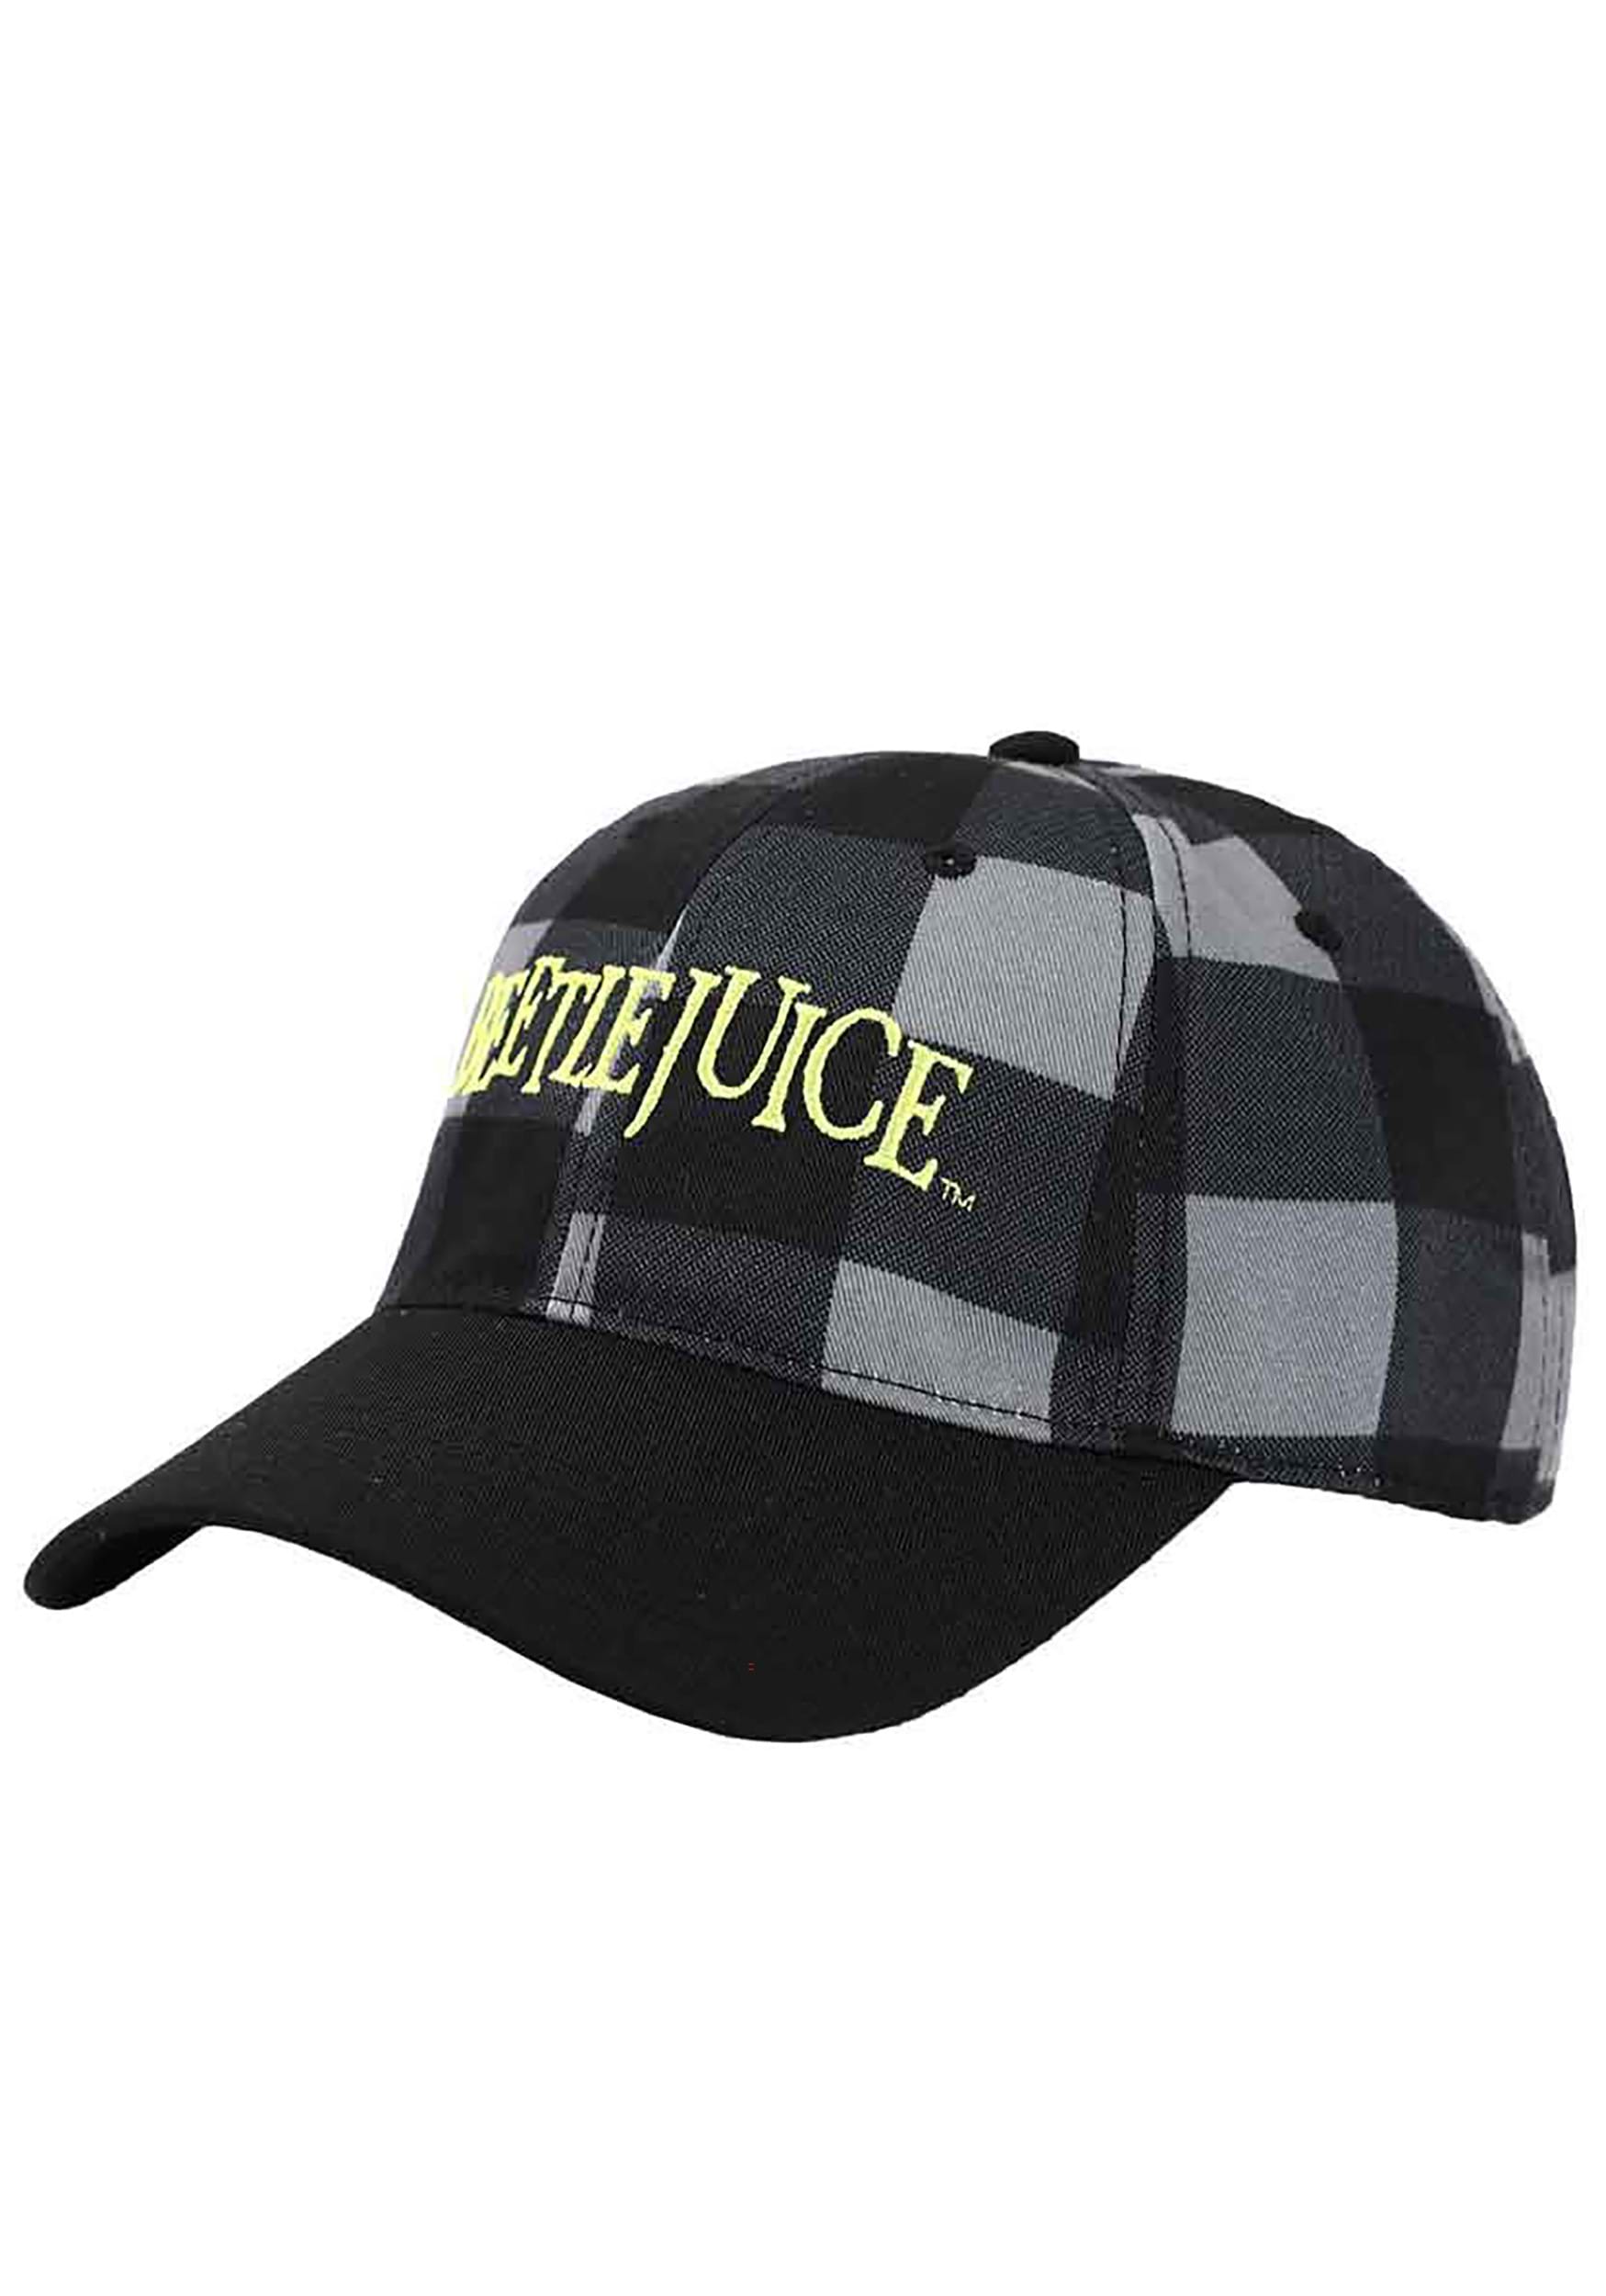 Embroidered Beetlejuice Logo Twill Plaid Hat